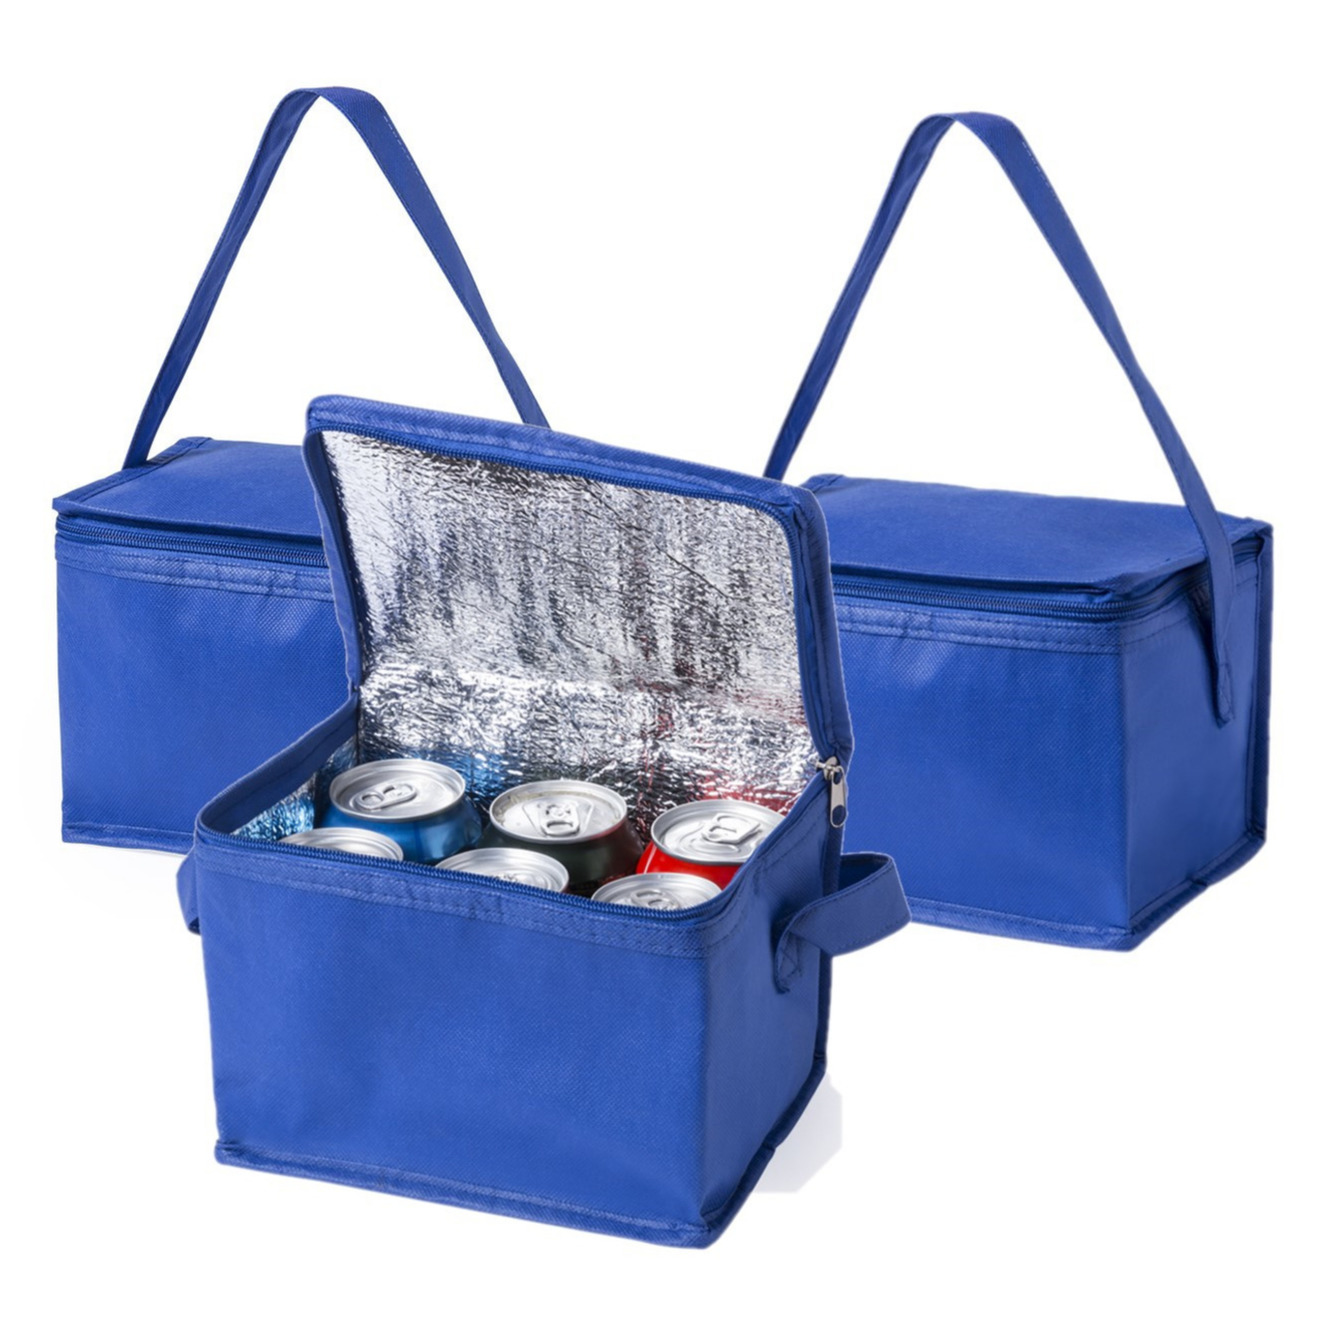 3x stuks kleine mini  koeltassen blauw sixpack blikjes - Compacte koelboxen/koeltassen en elementen